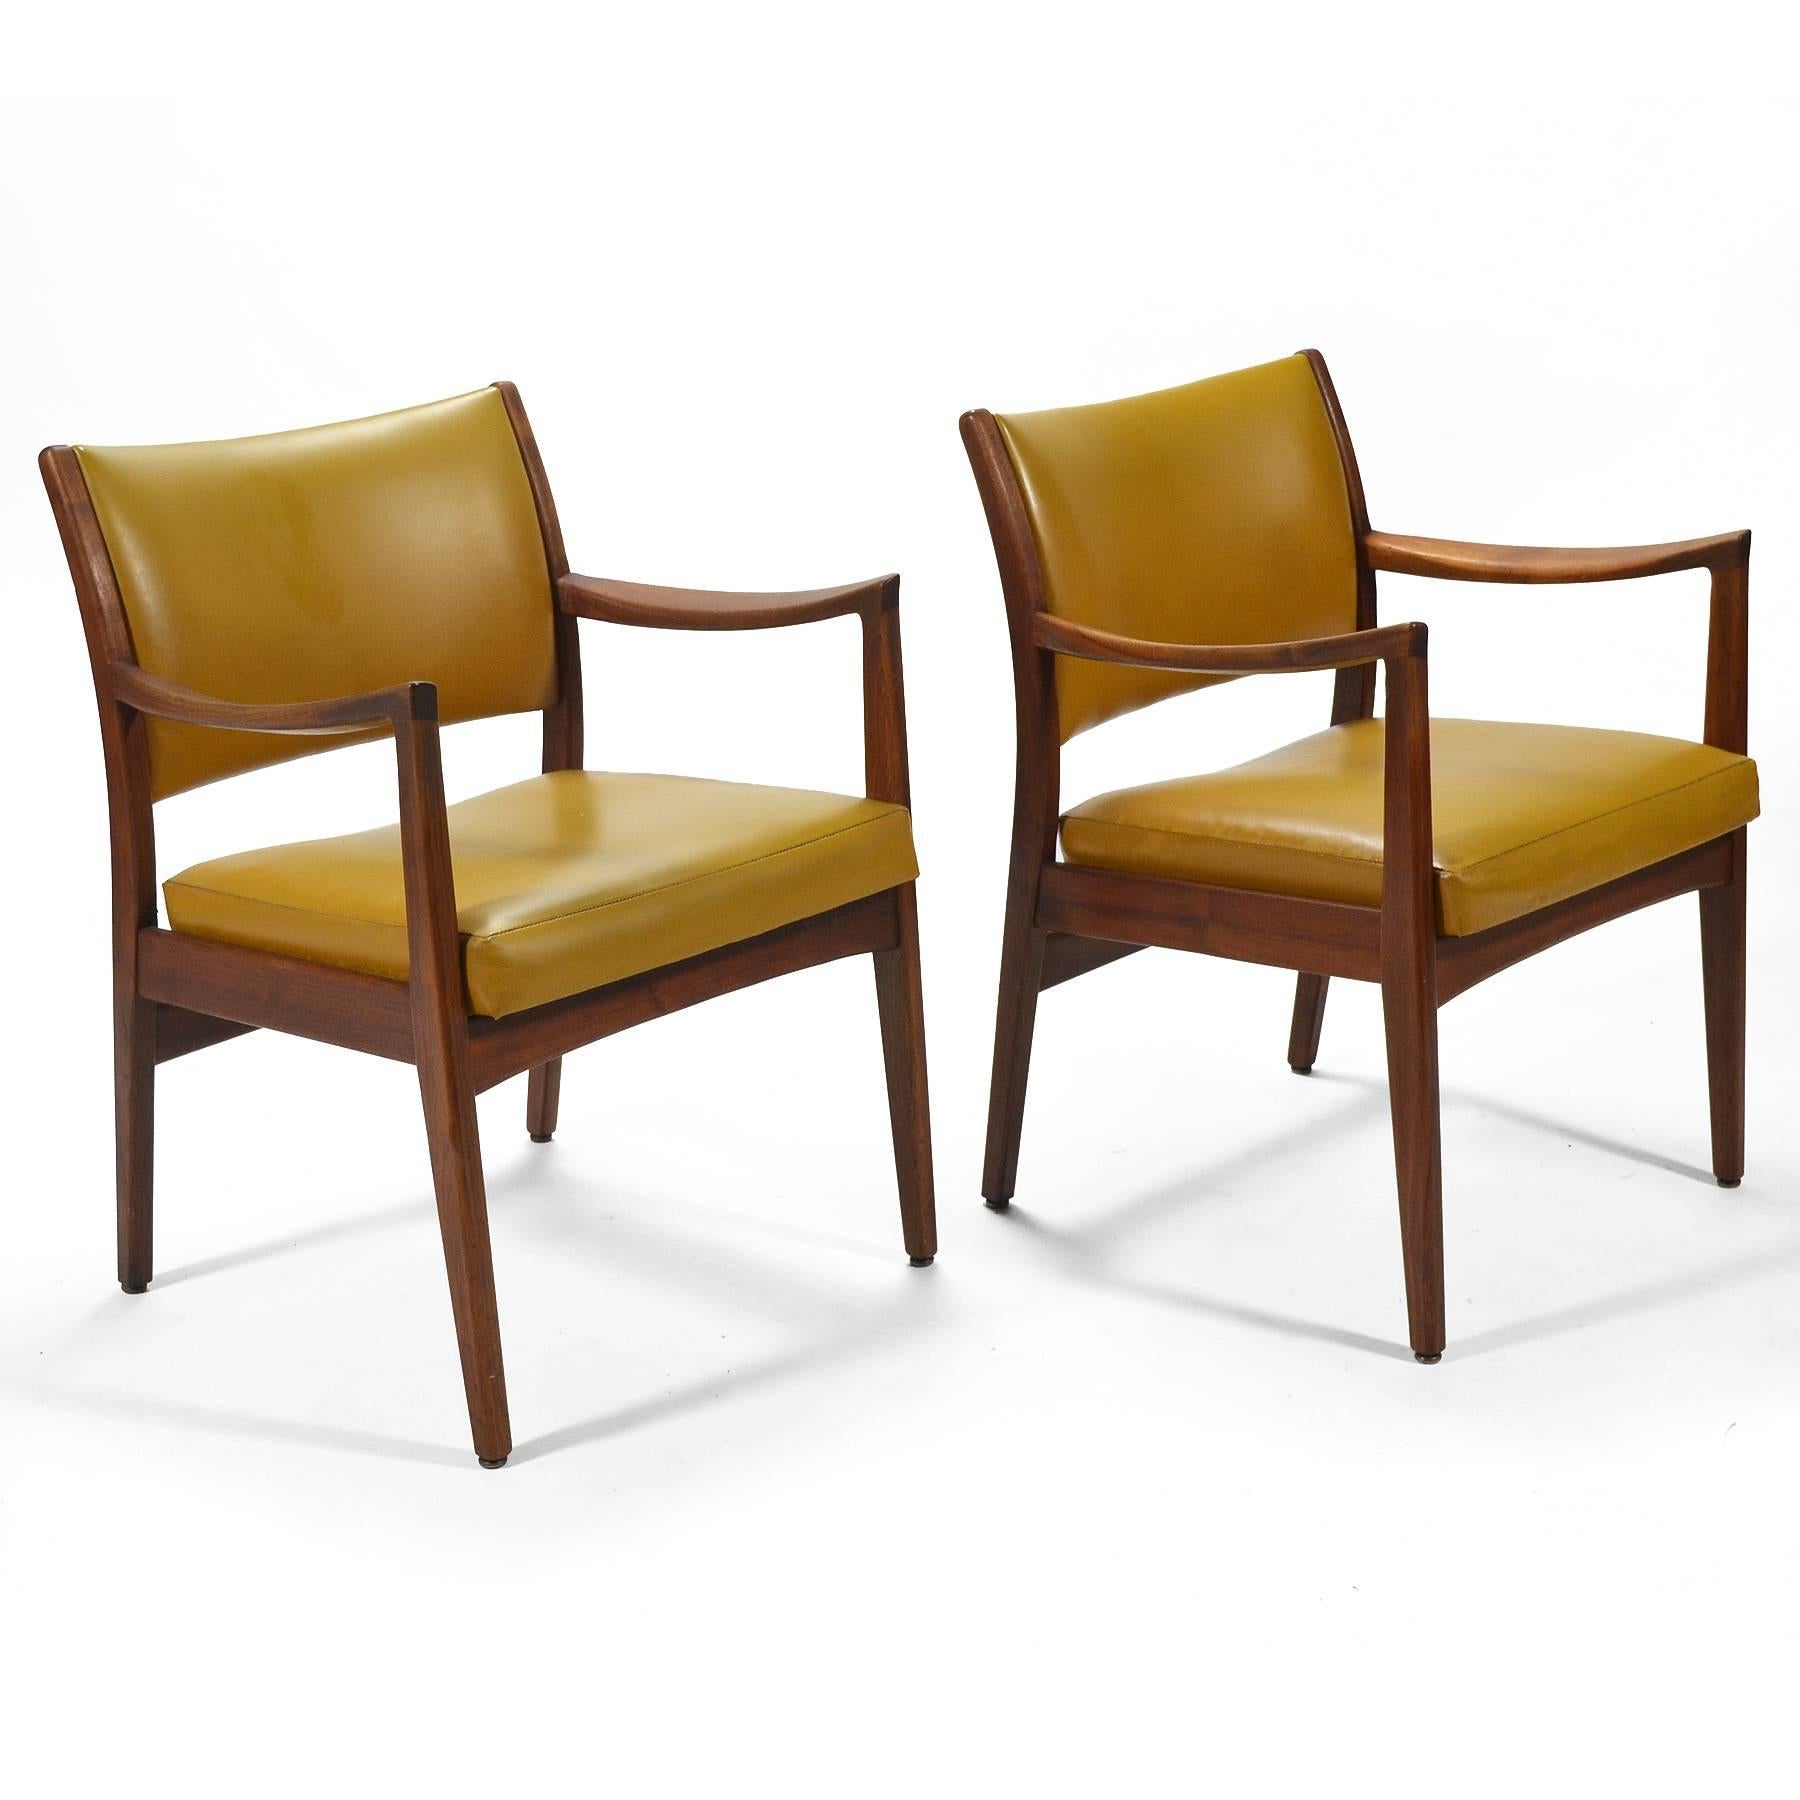 Ces fauteuils de la Johnson Chair Company sont dotés de superbes cadres en noyer sculpté et d'accoudoirs très remarquables. Ils nous rappellent les designs de Jens Risom et Peter Wessel et leur qualité de fabrication est fantastique.